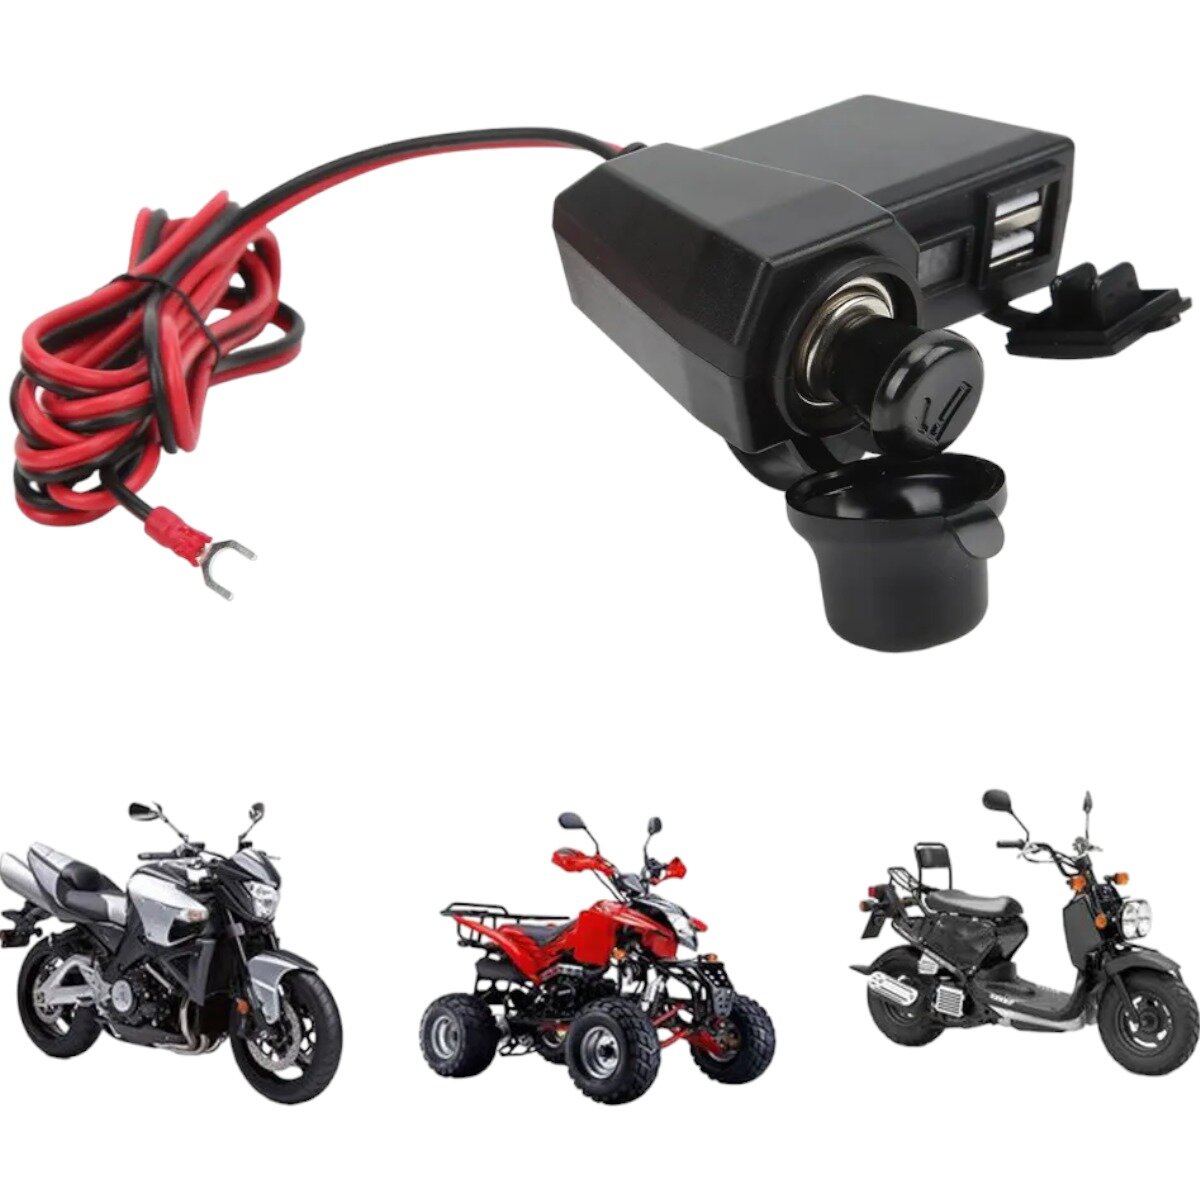 Прикуриватель с 2 портами USB для мотоцикла скутера максискутера мопеда квадроцикла с вольтметром черный